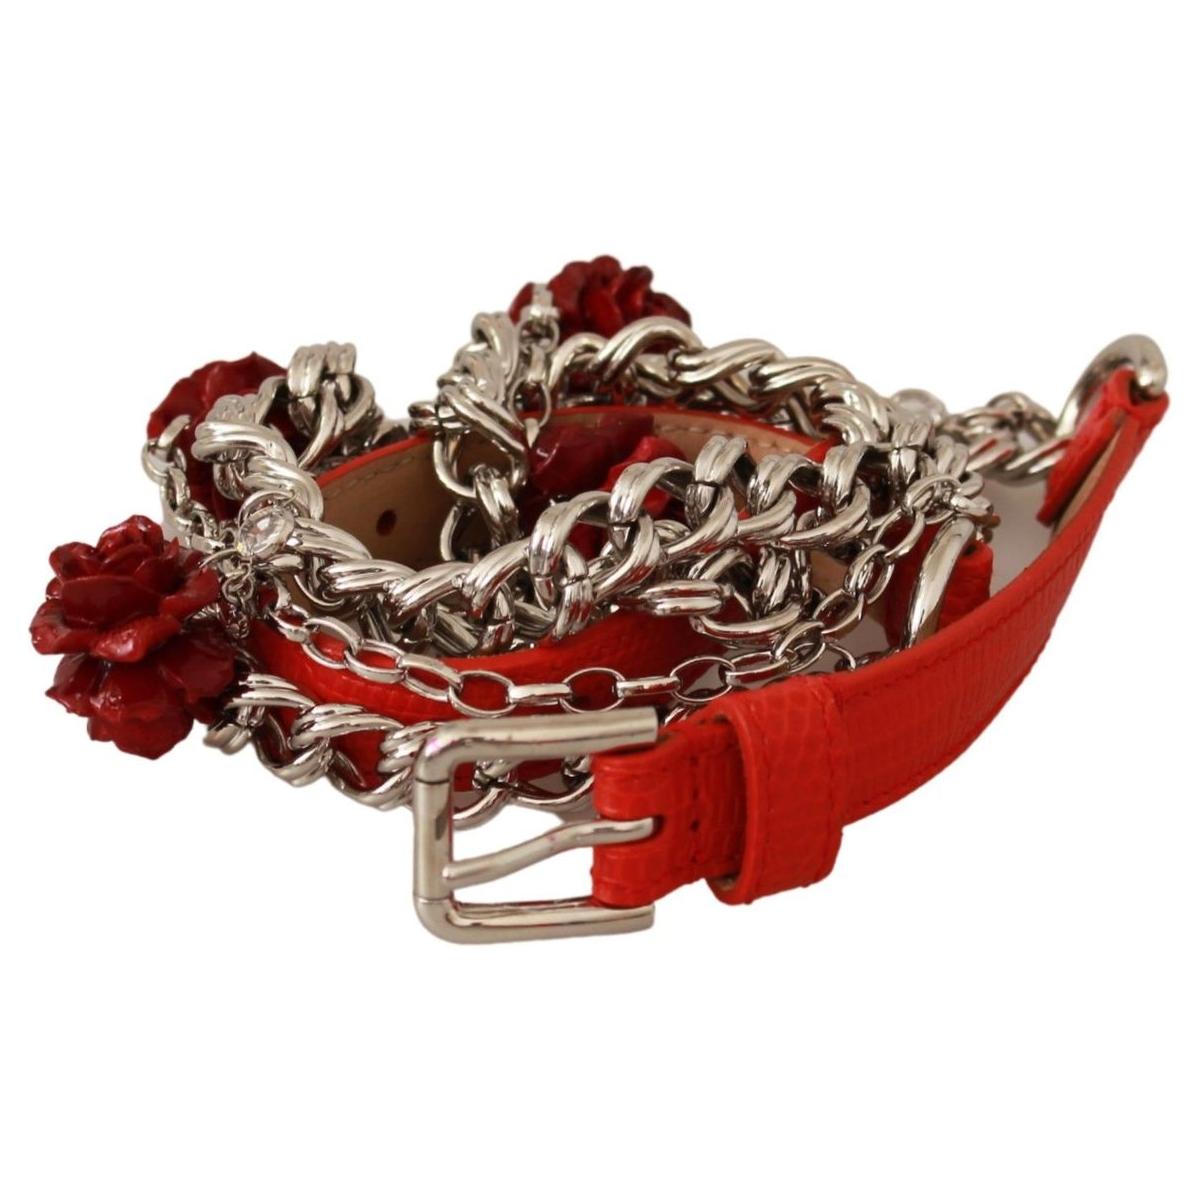 Dolce & Gabbana Elegant Floral Rose Waist Belt in Vibrant Red red-leather-roses-floral-silver-waist-belt Belt IMG_1565-b2adb2b1-e4b_eec8dc9d-8b0f-4318-91f1-6493f3806c3b.jpg